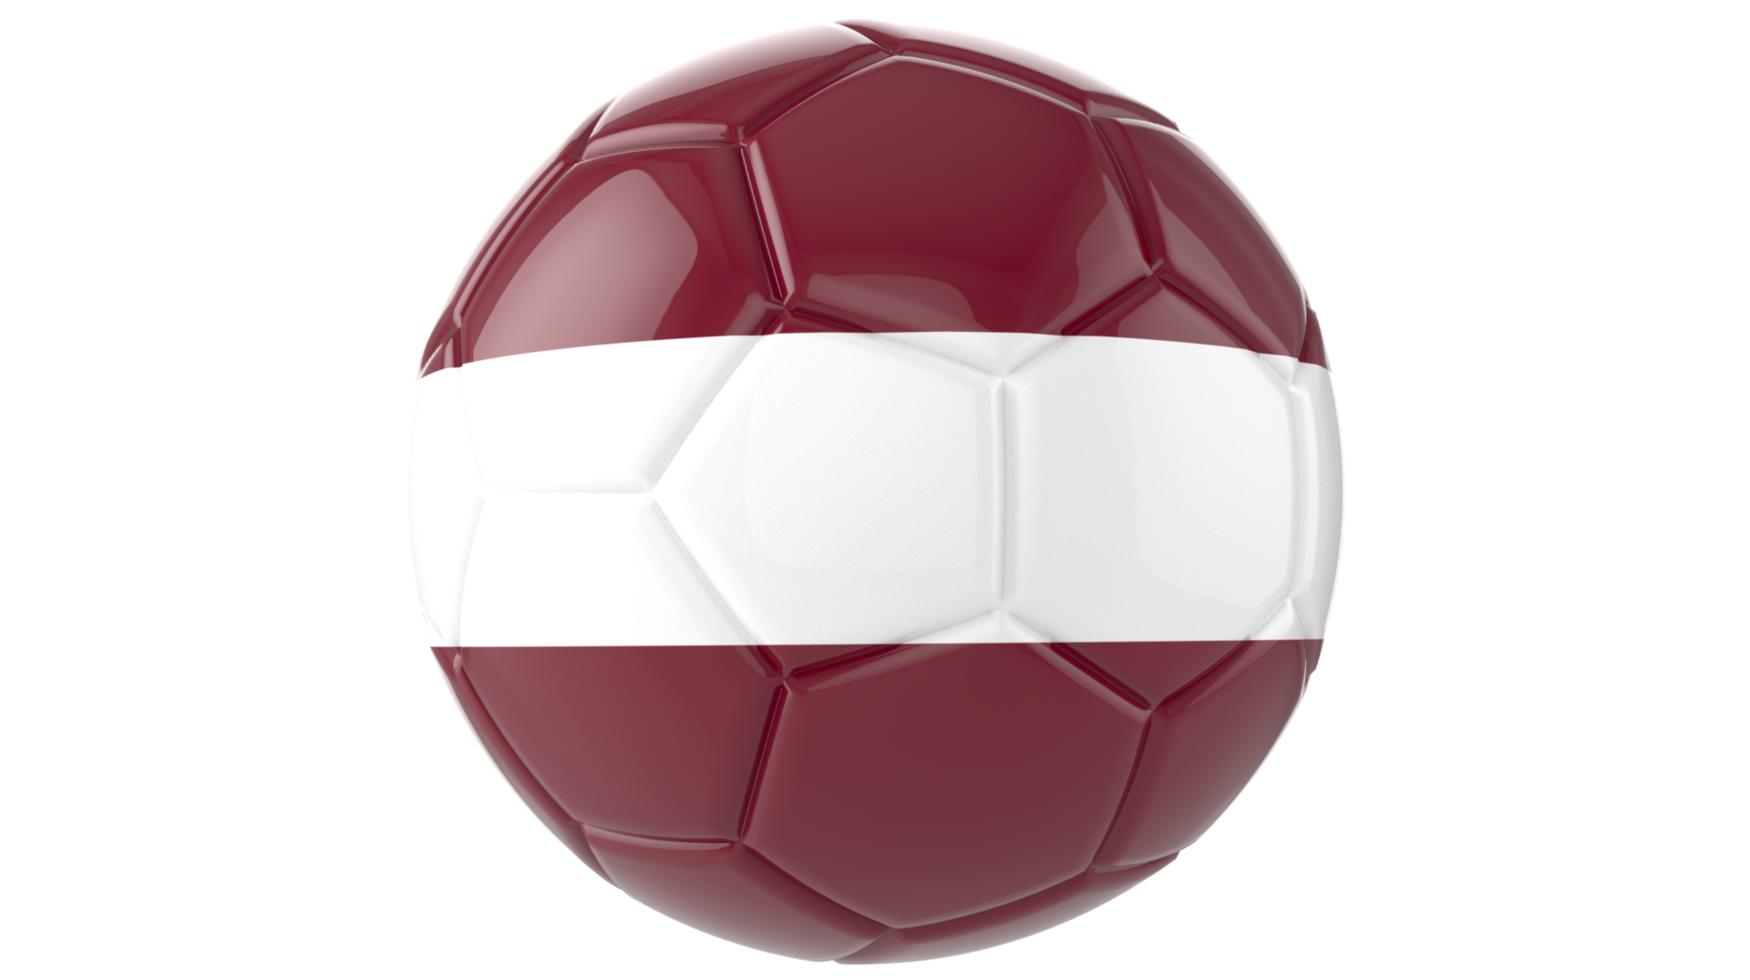 Balón de fútbol realista en 3d con la bandera de letonia aislado en un fondo png transparente